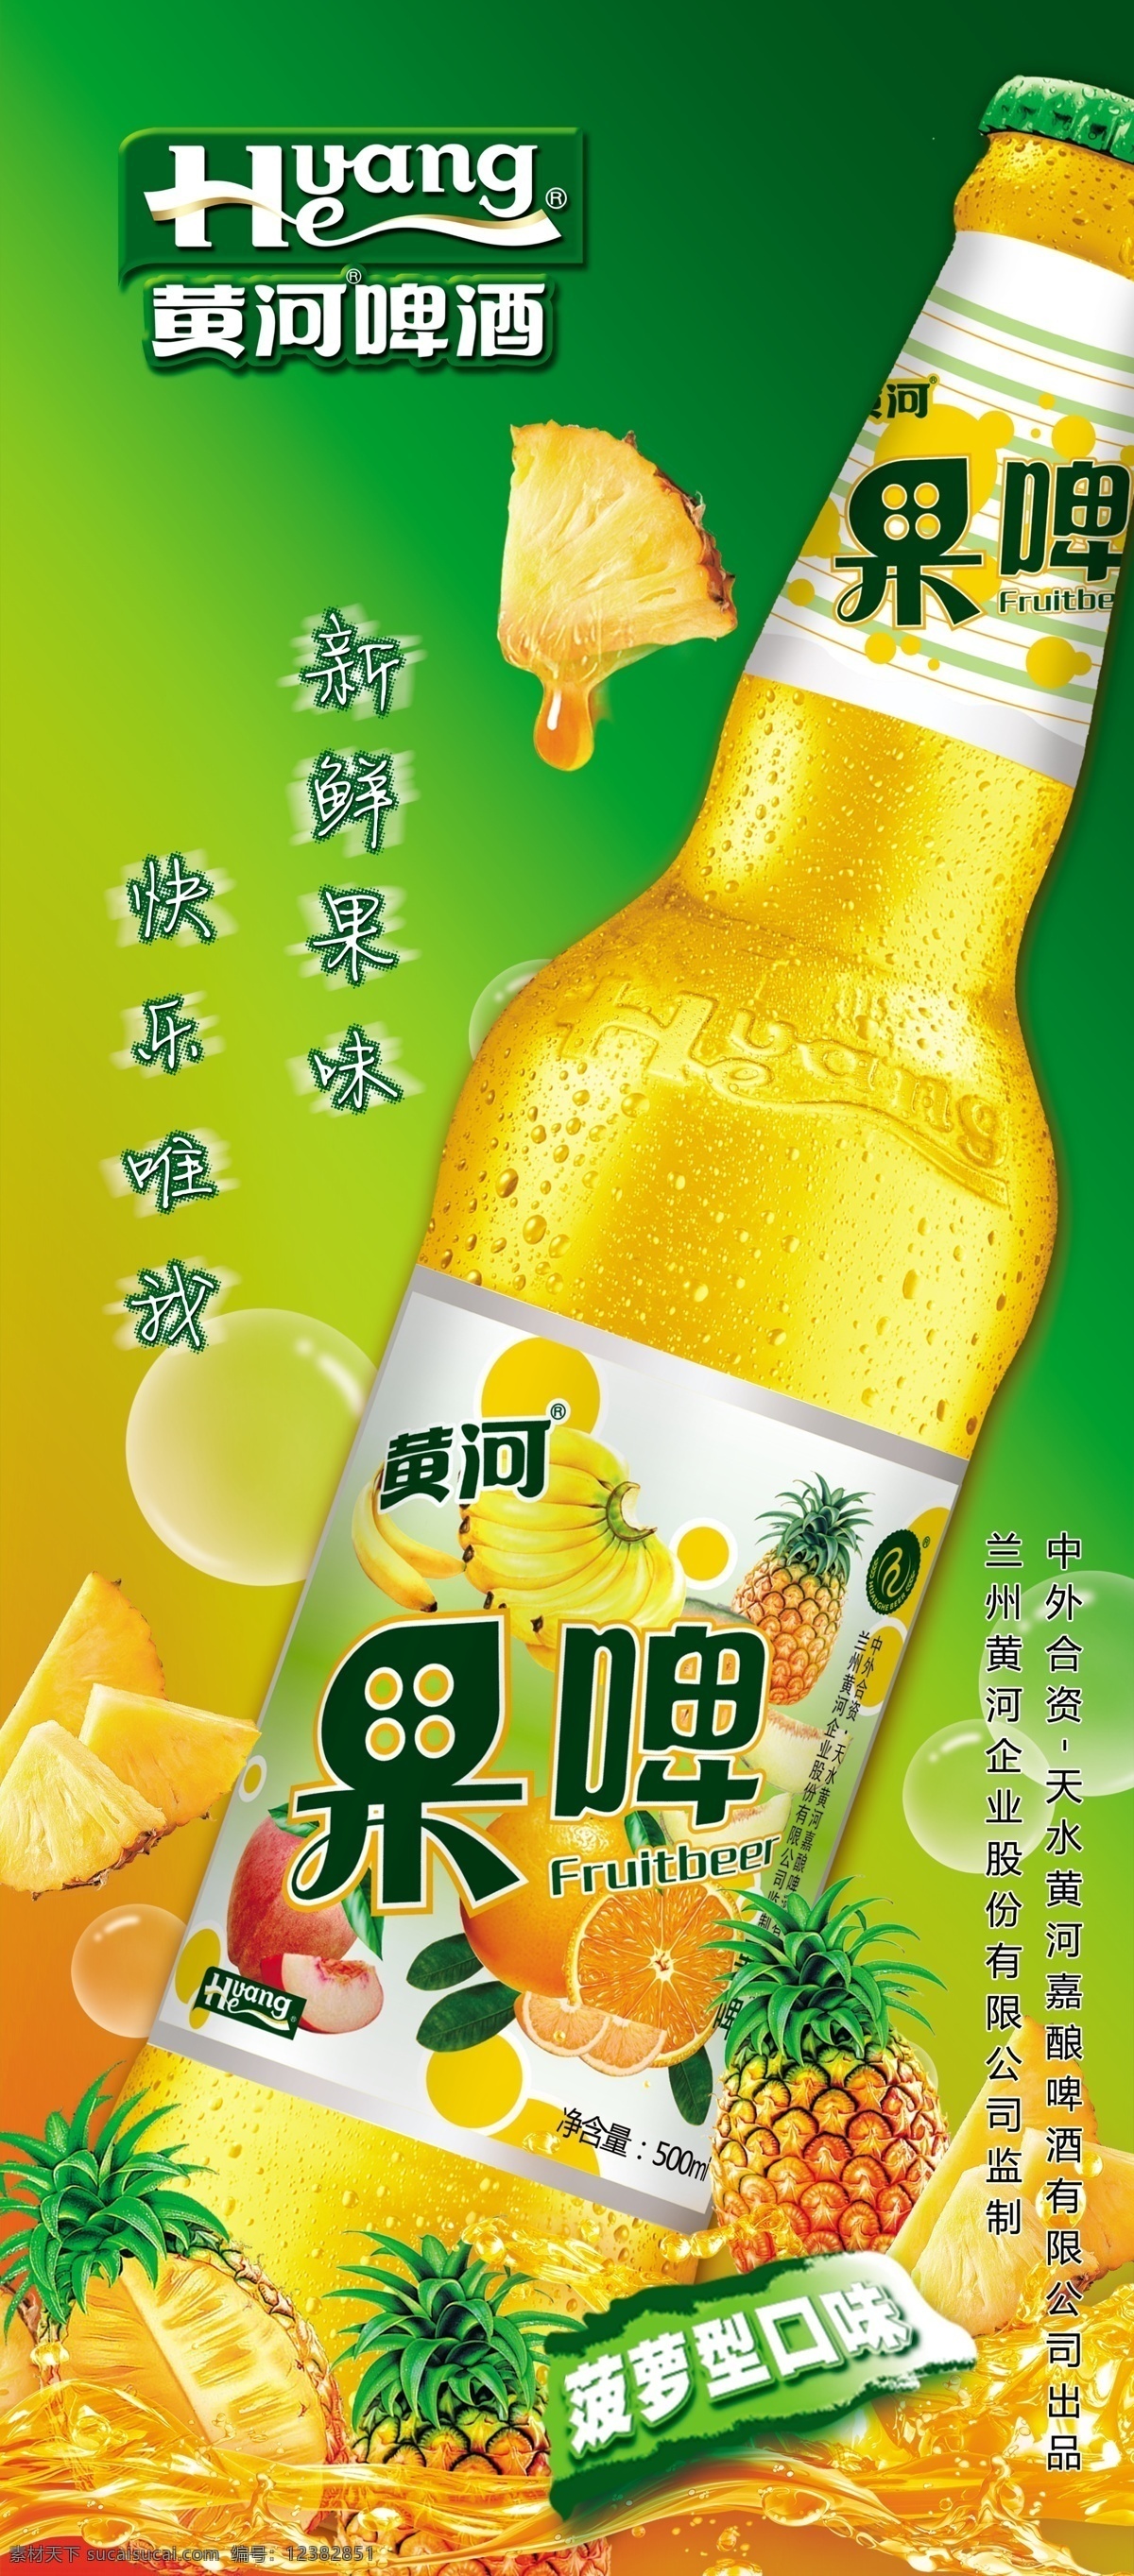 菠萝口味饮品 果啤 菠萝 饮料 啤酒海报 广告设计模板 源文件